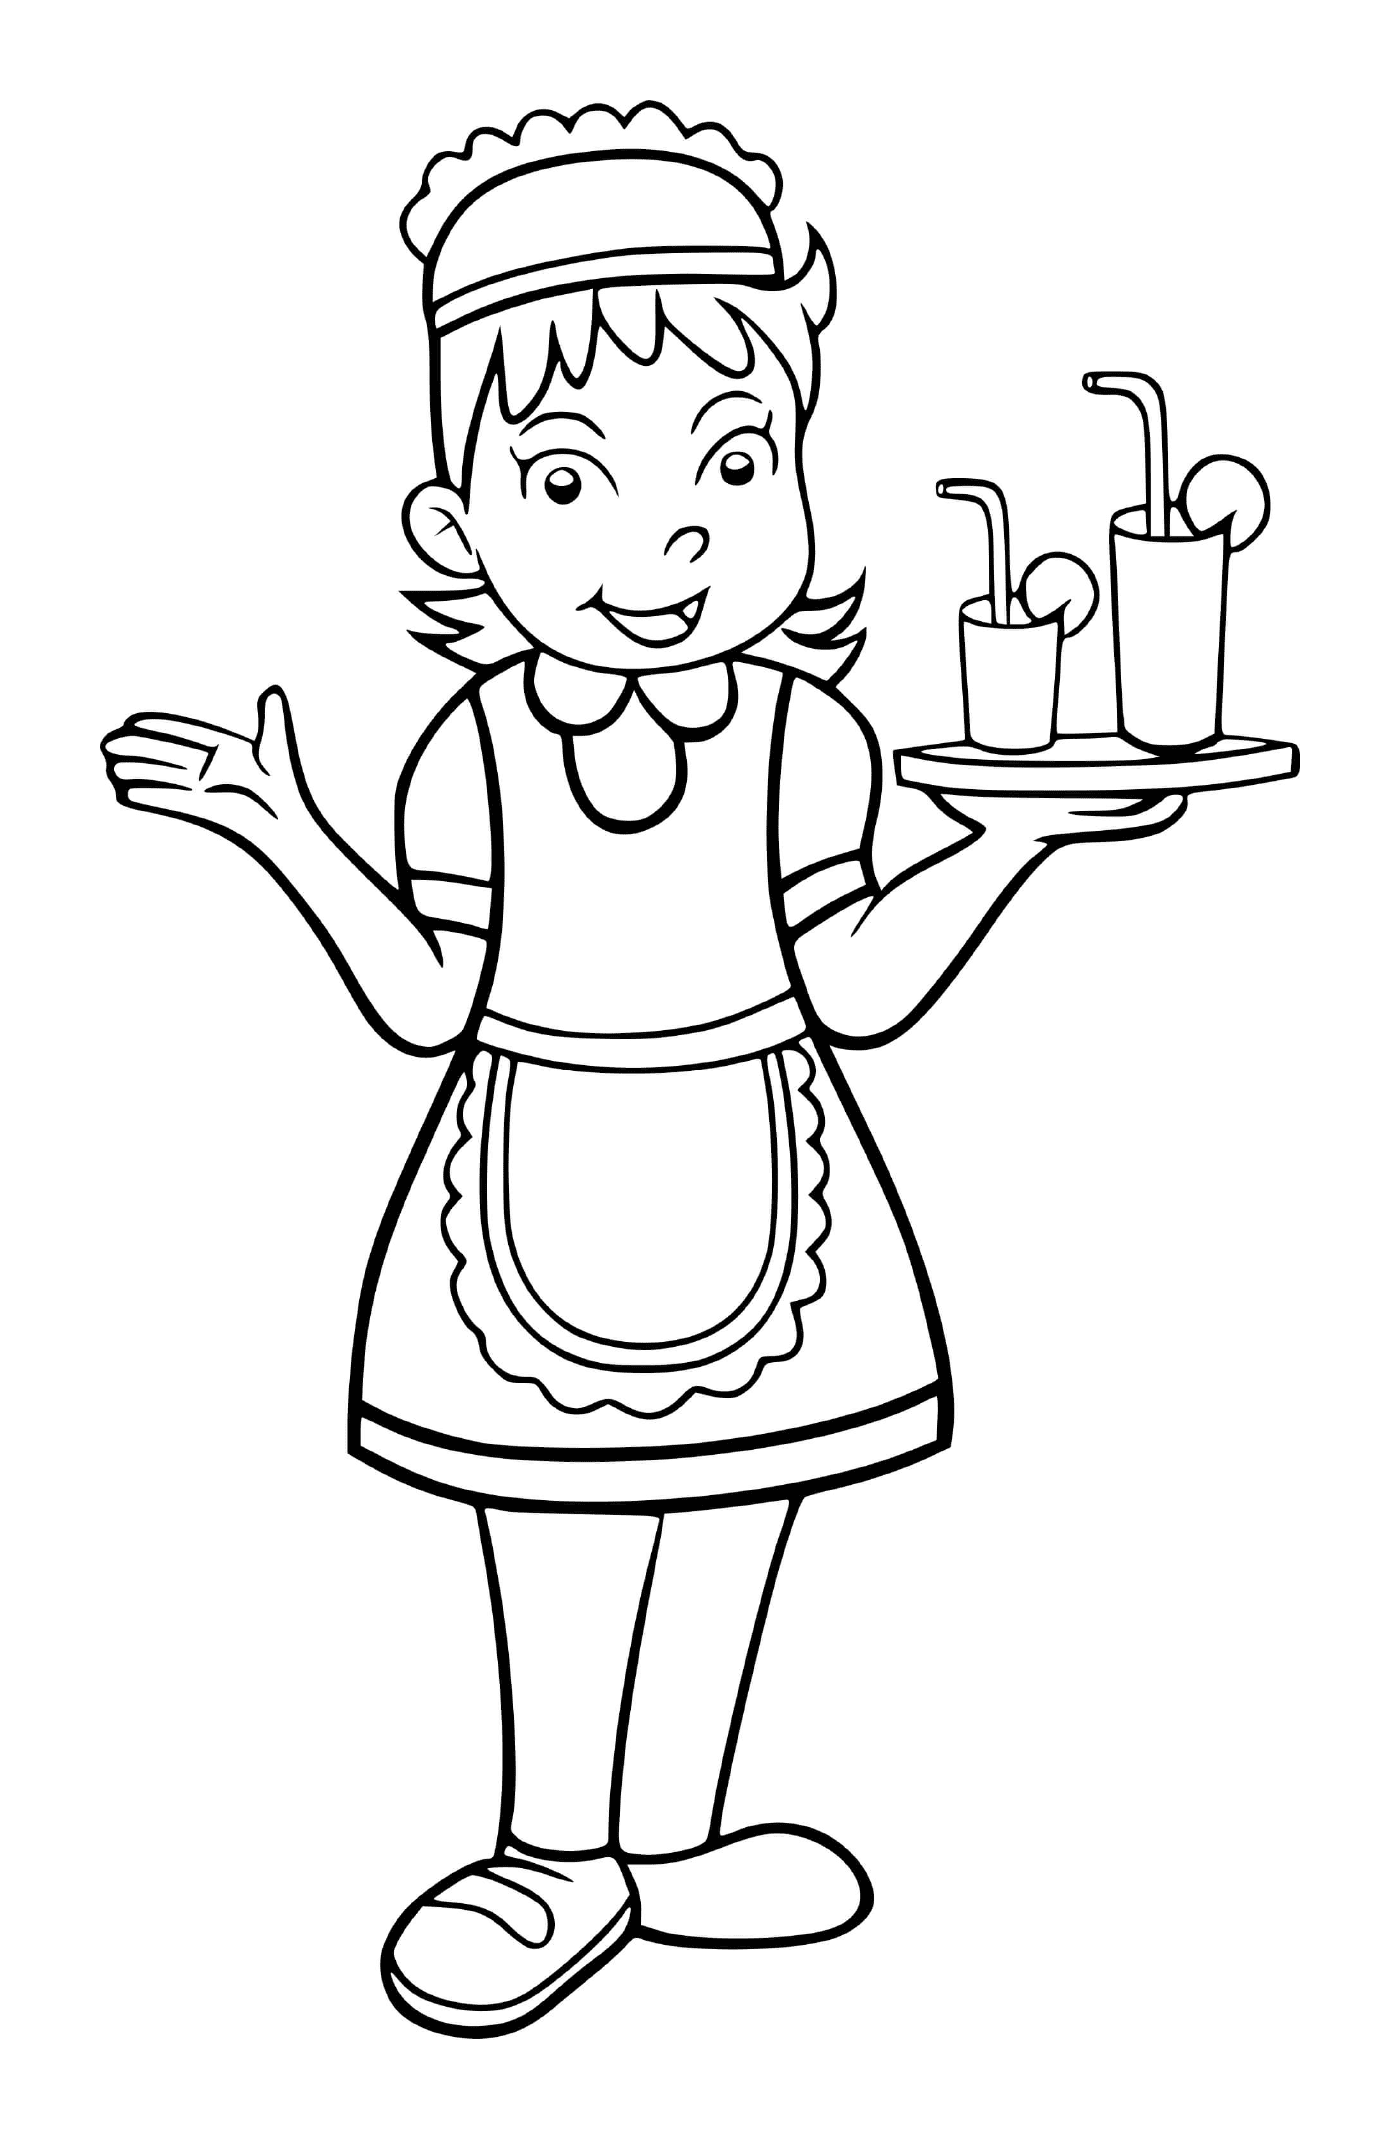 une fille se deguise pour etre serveuse dans un grand restaurant